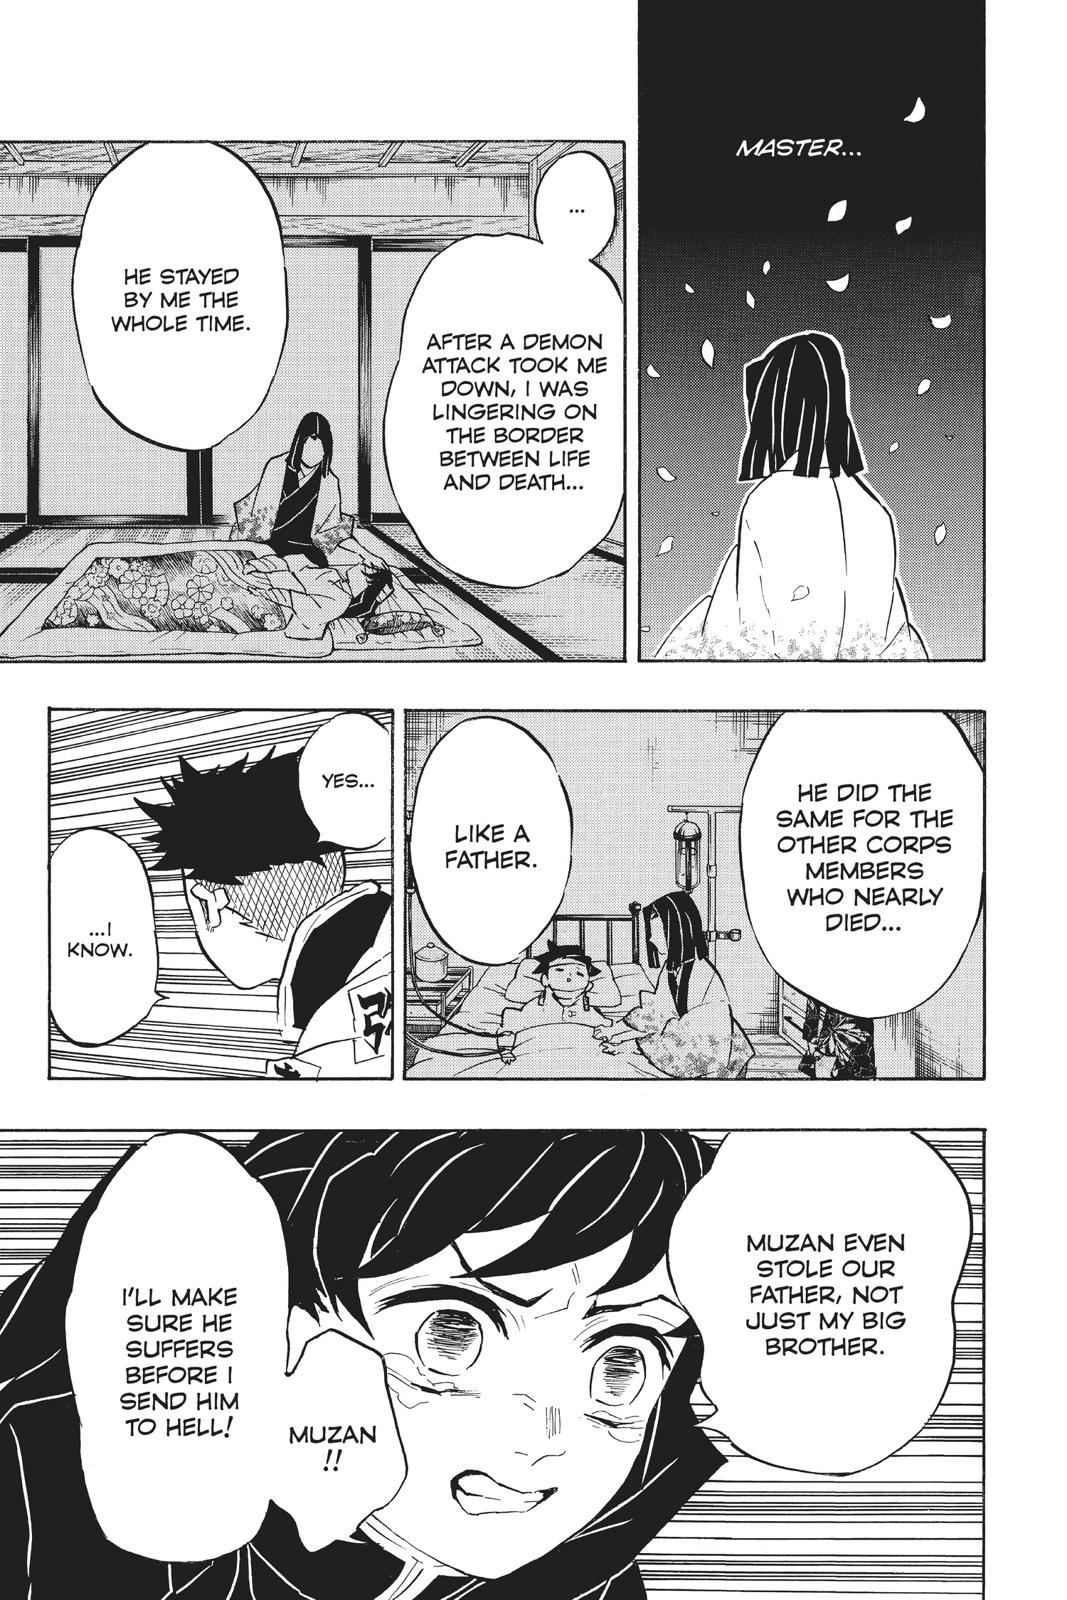 Demon Slayer Manga Manga Chapter - 140 - image 12